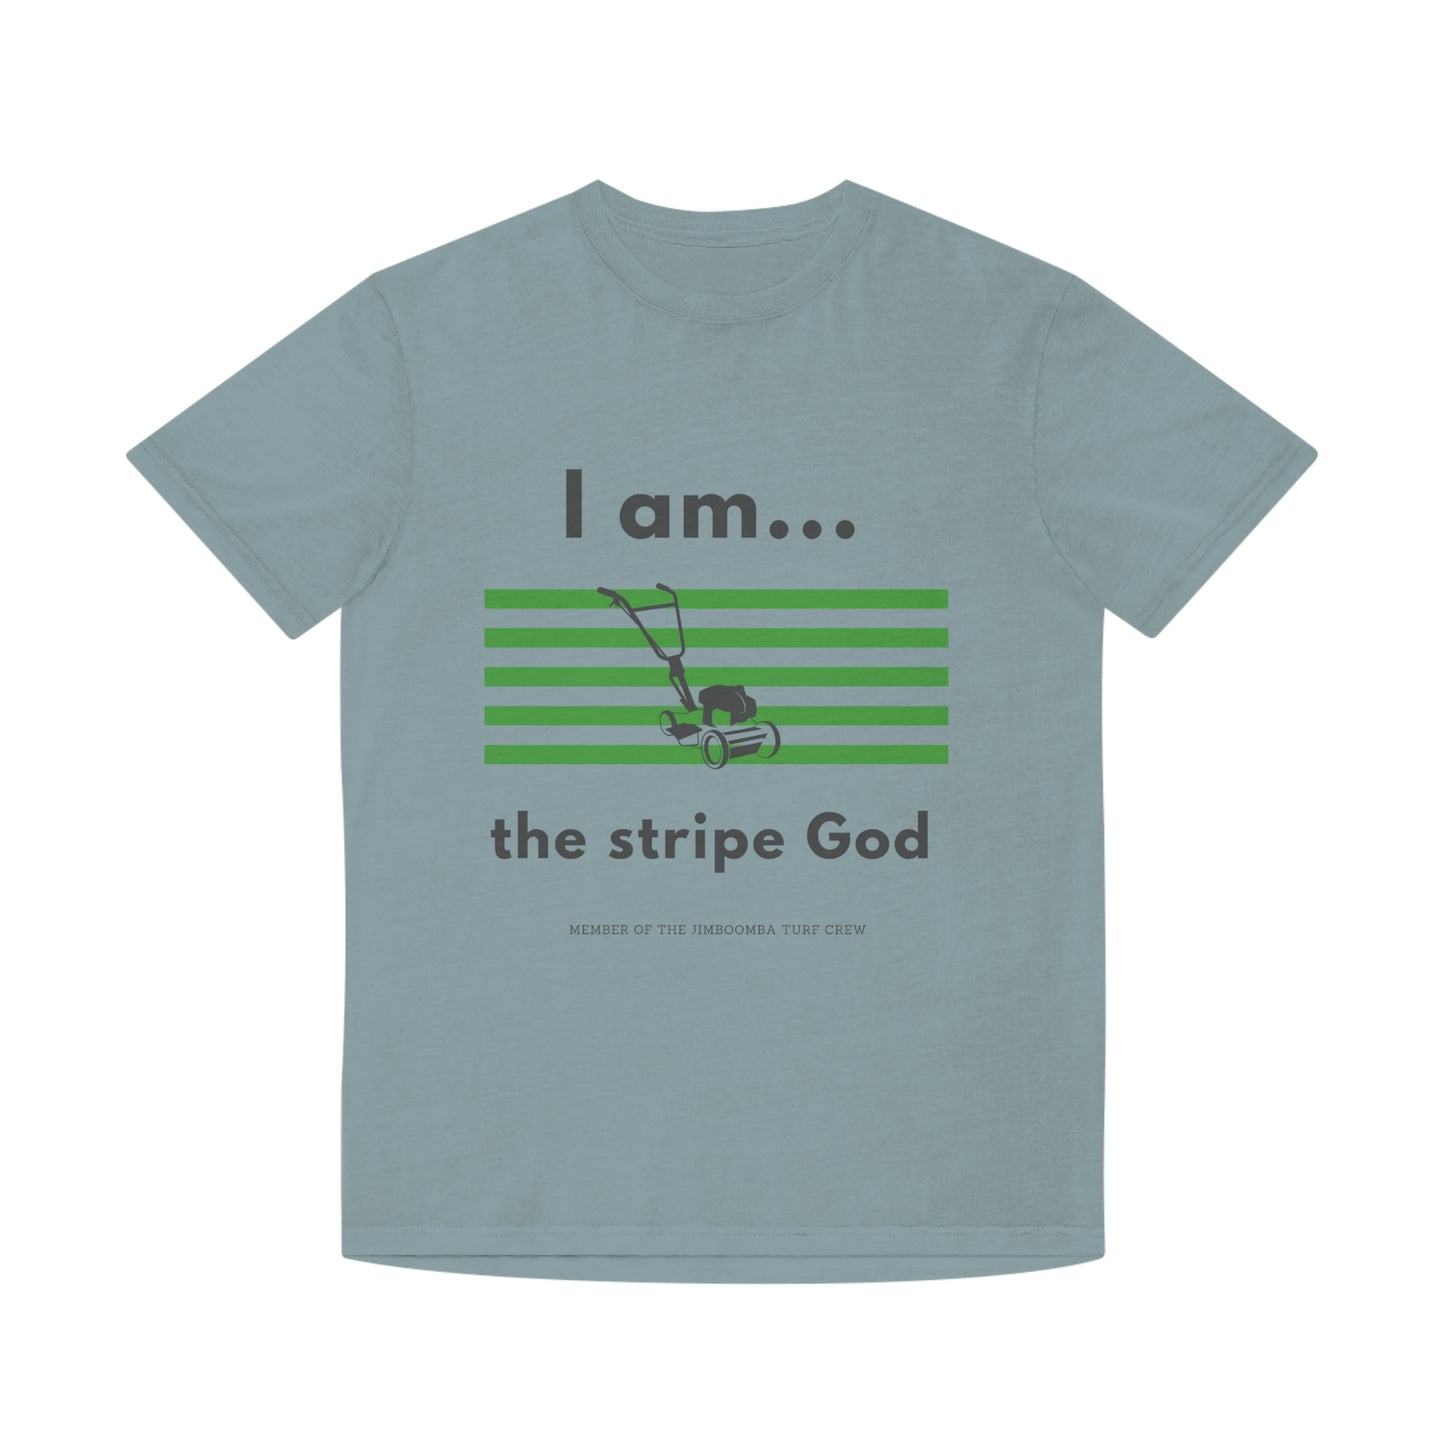 Unisex Faded Shirt - I am the stripe God